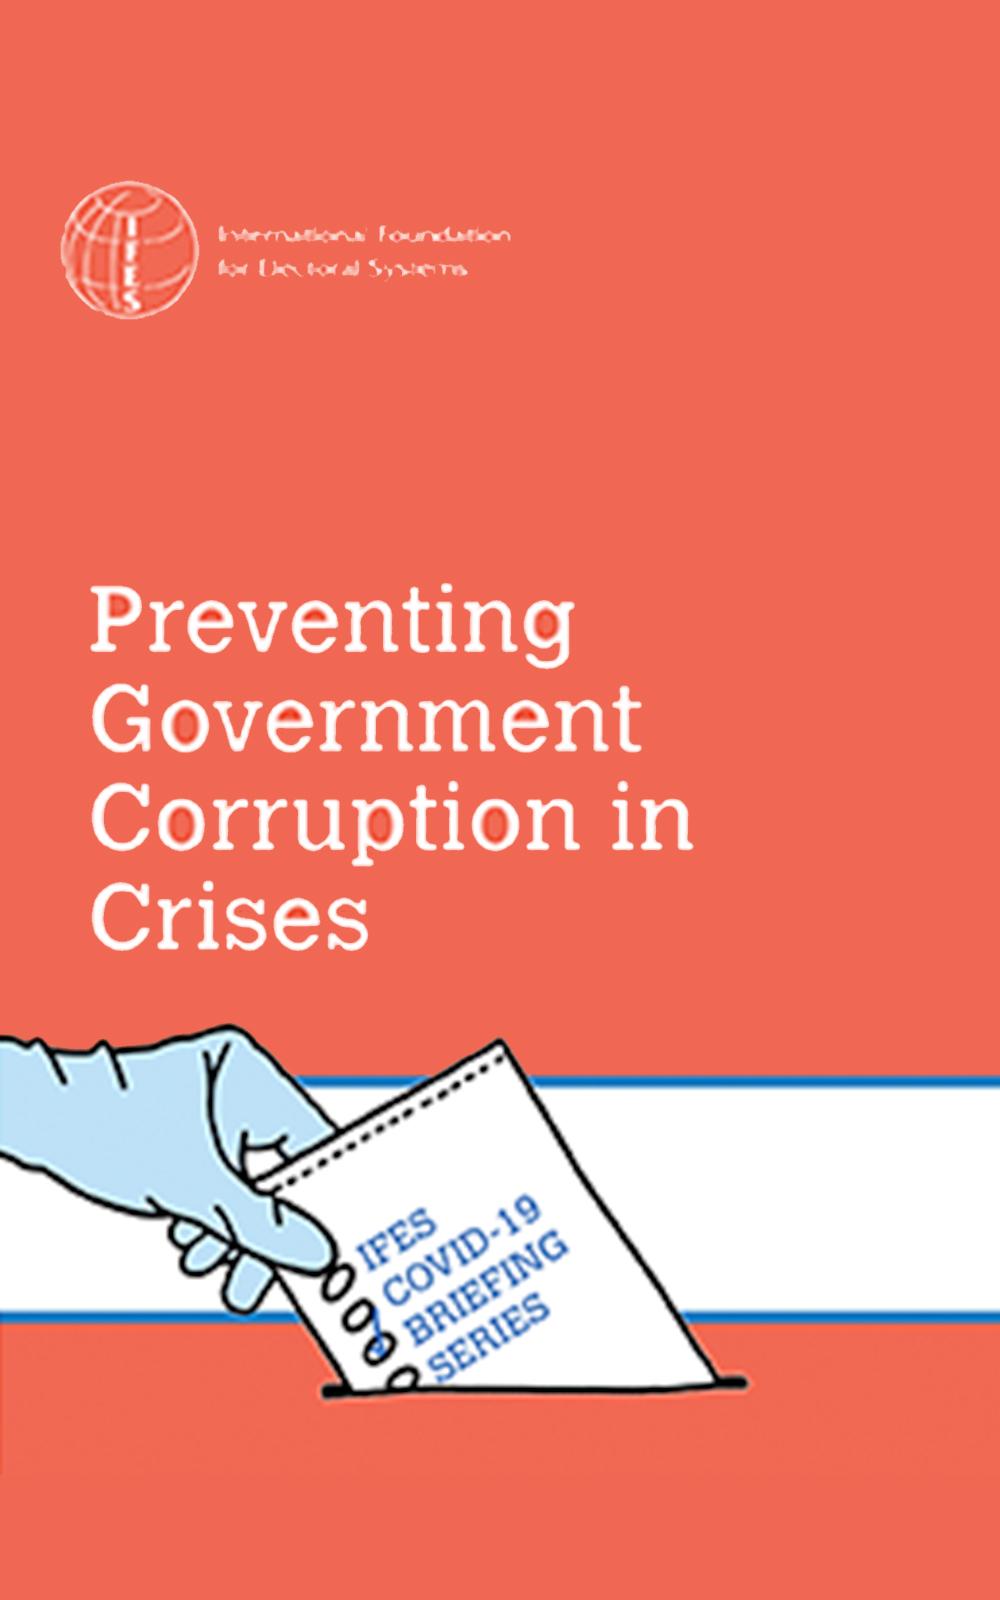 COVID-19 Preventing Government Corruption in Crises